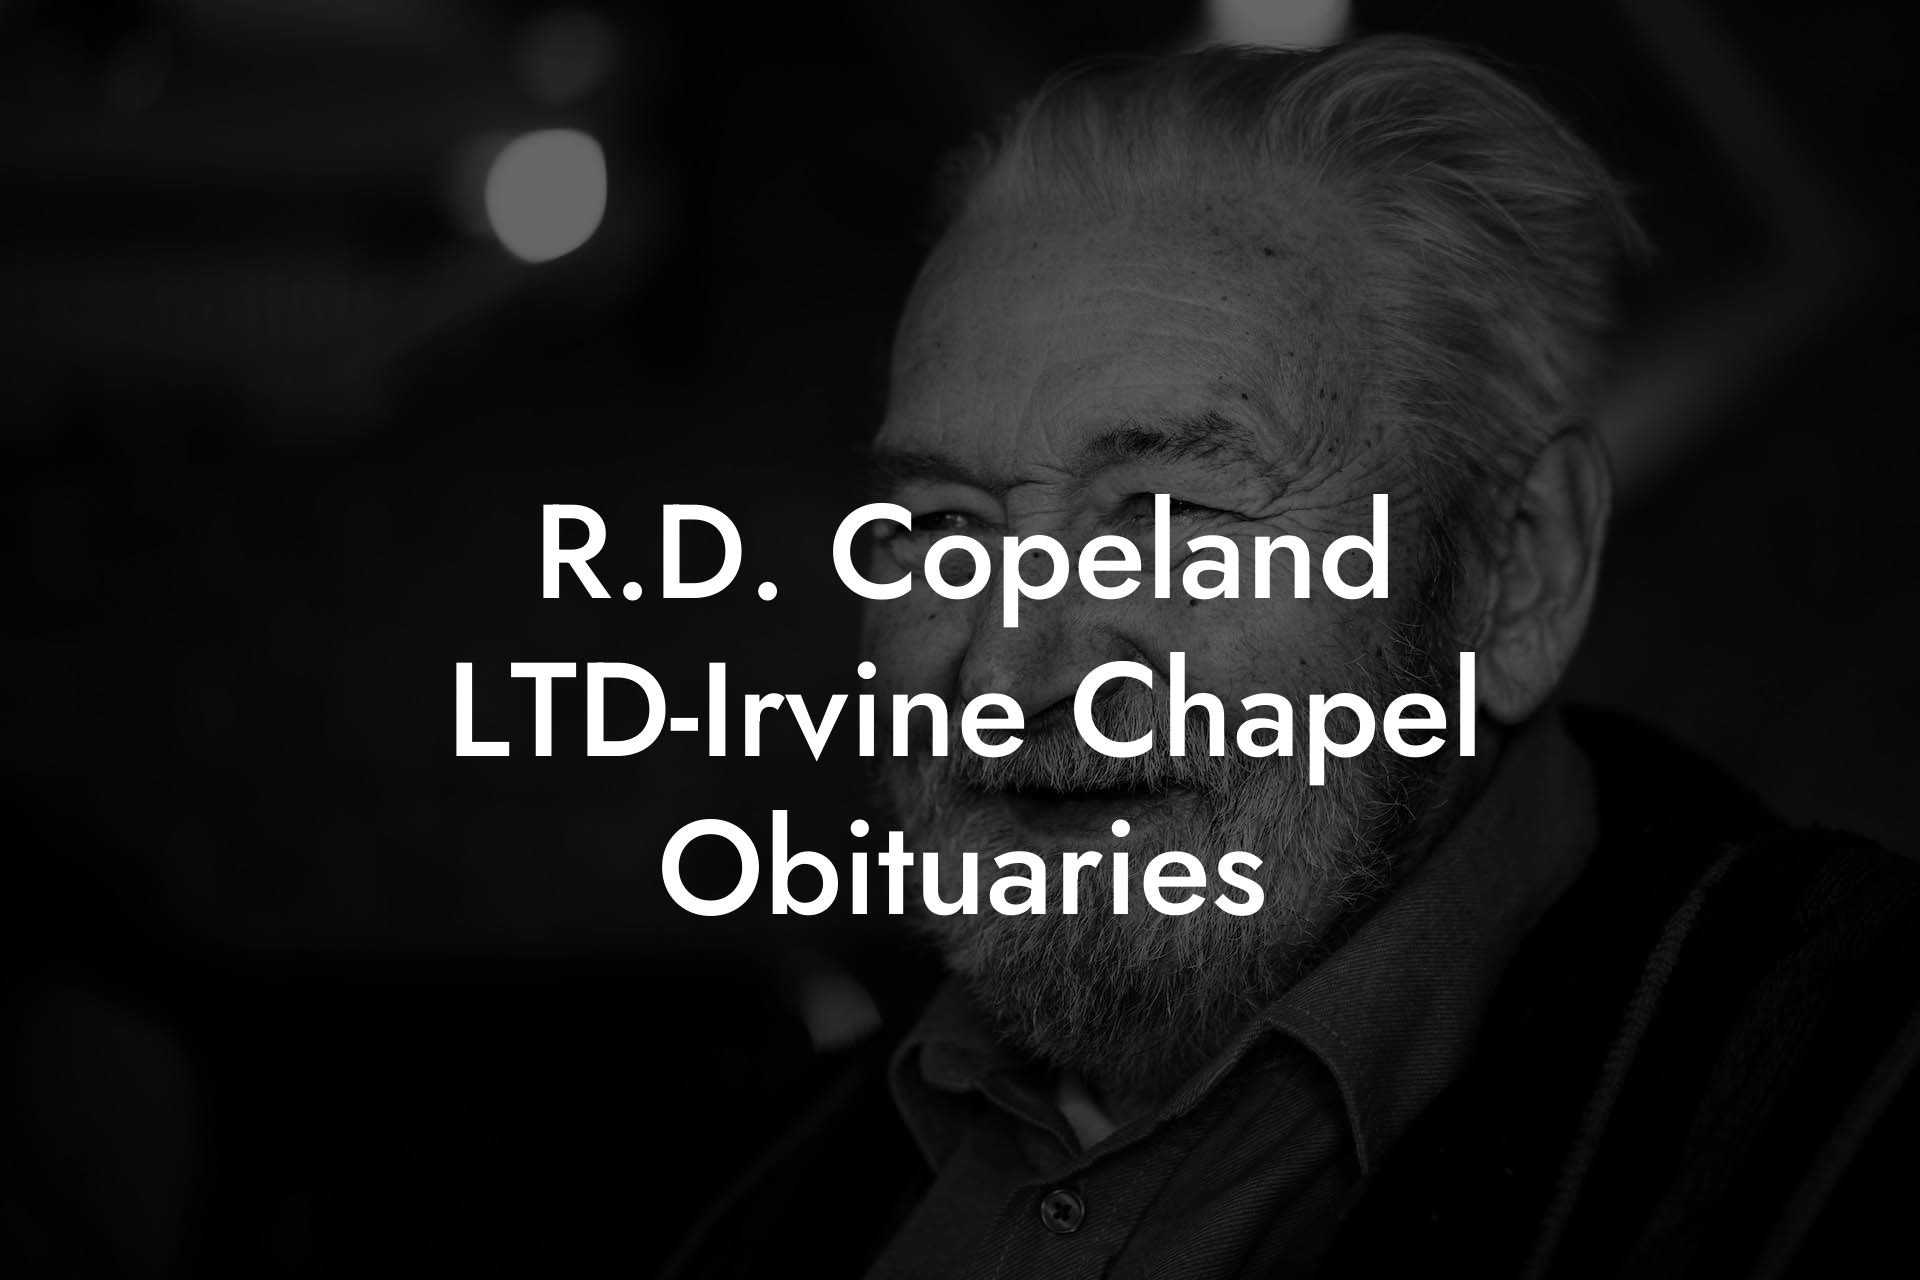 R.D. Copeland LTD-Irvine Chapel Obituaries